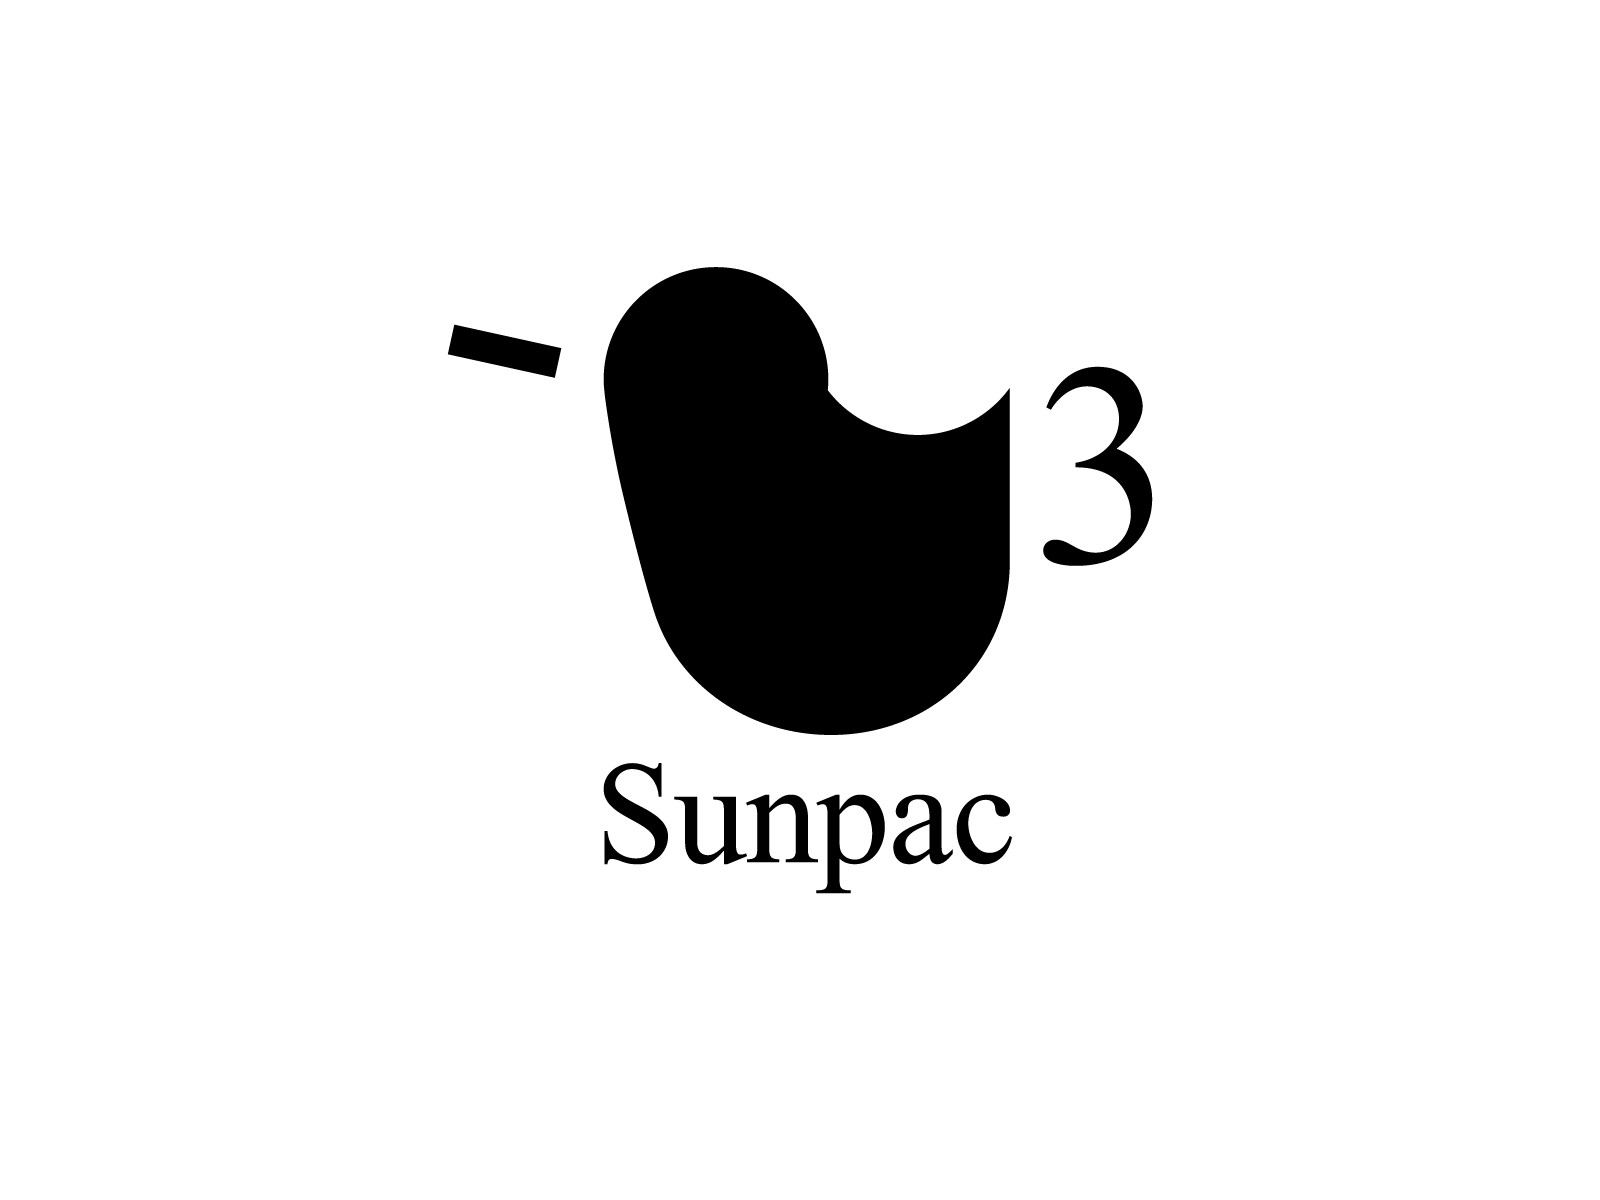 works_sunpac_logo_01